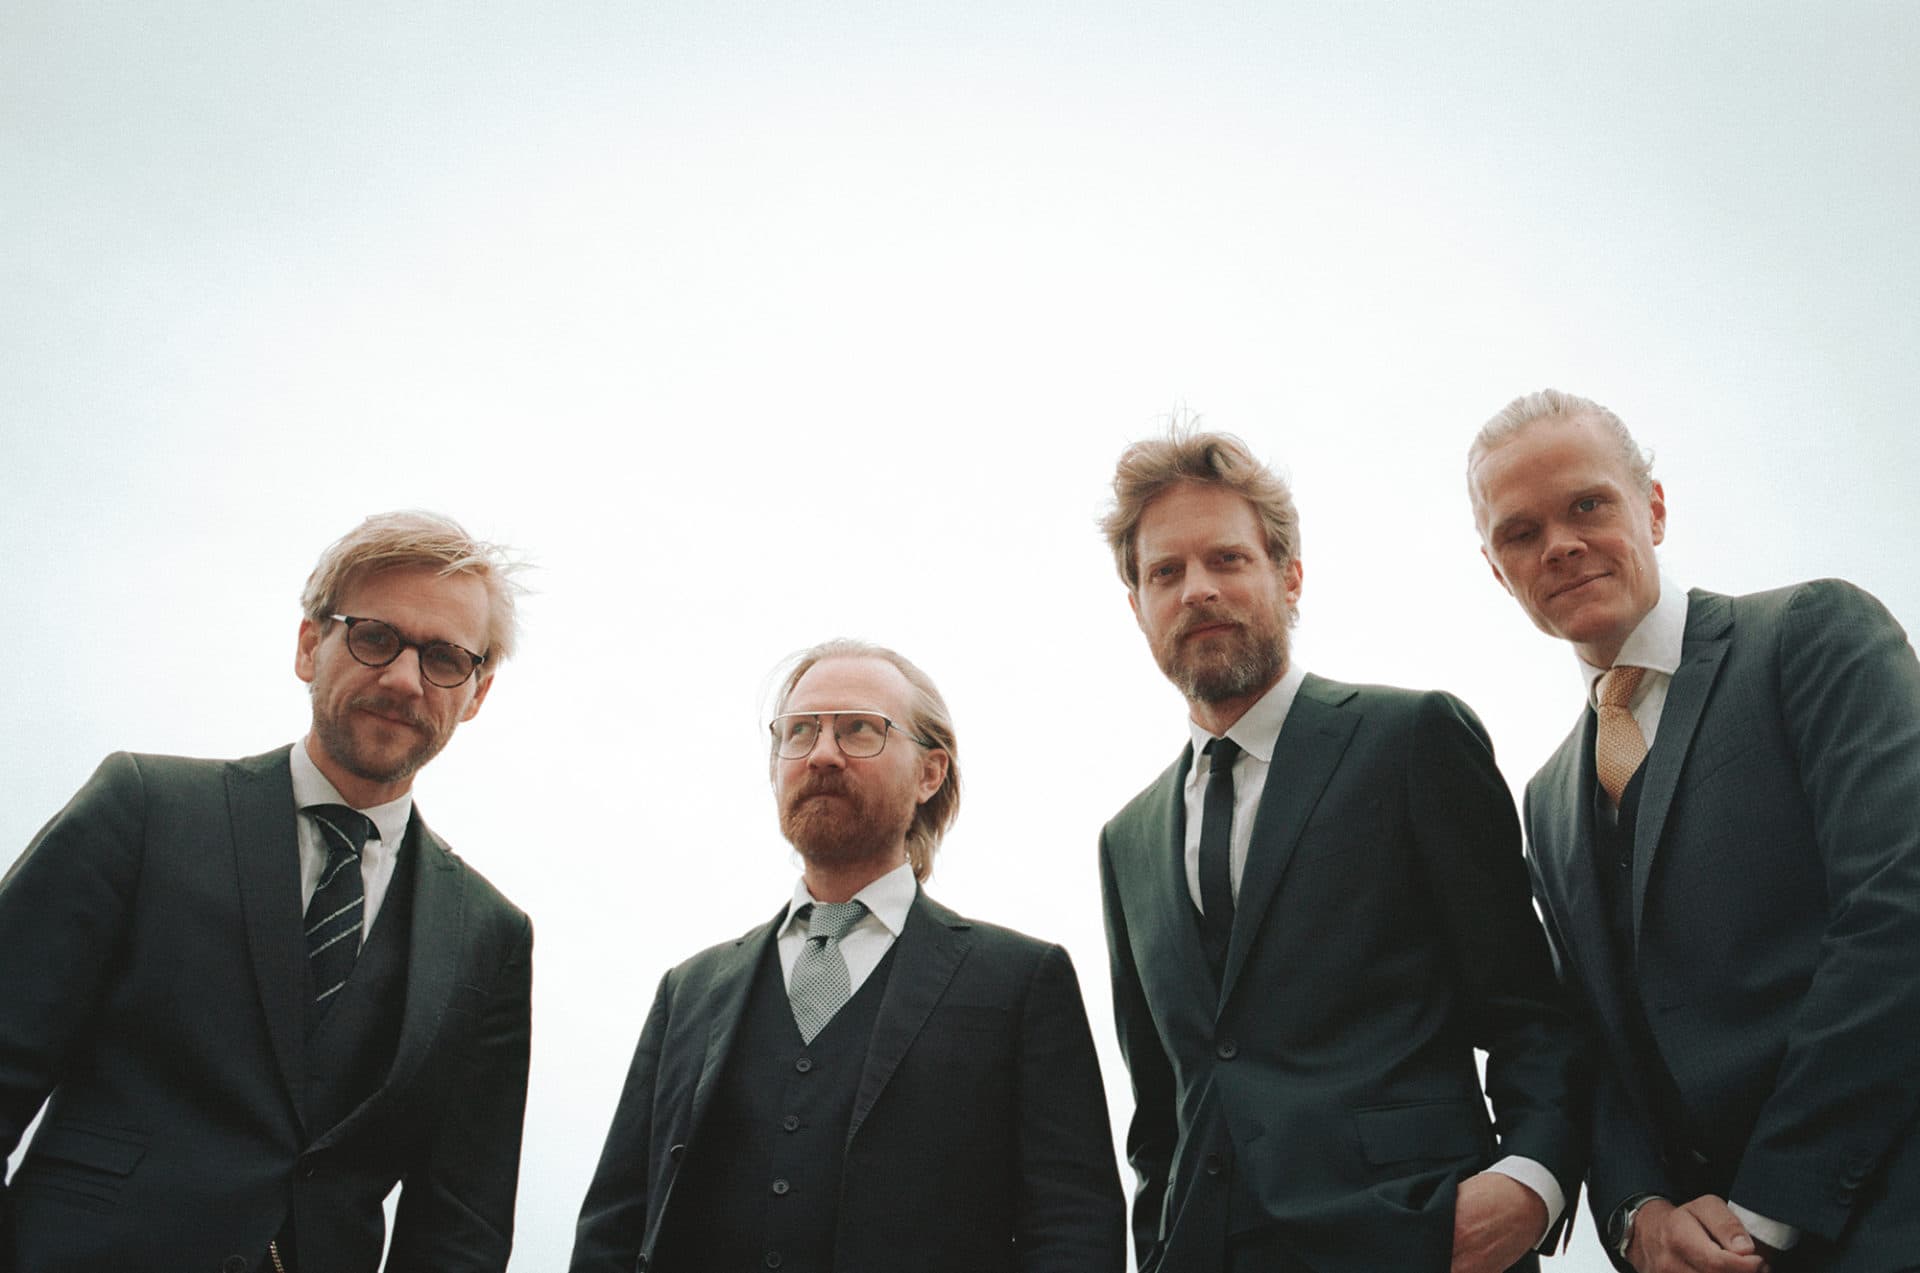 Danish String Quartet, left to right: Roon Tonsgaard Sörensen, Fredrik Schoen Schoen, Asbjorn Norgaard, Frederik Orlando.  (Courtesy Caroline Bittencourt)